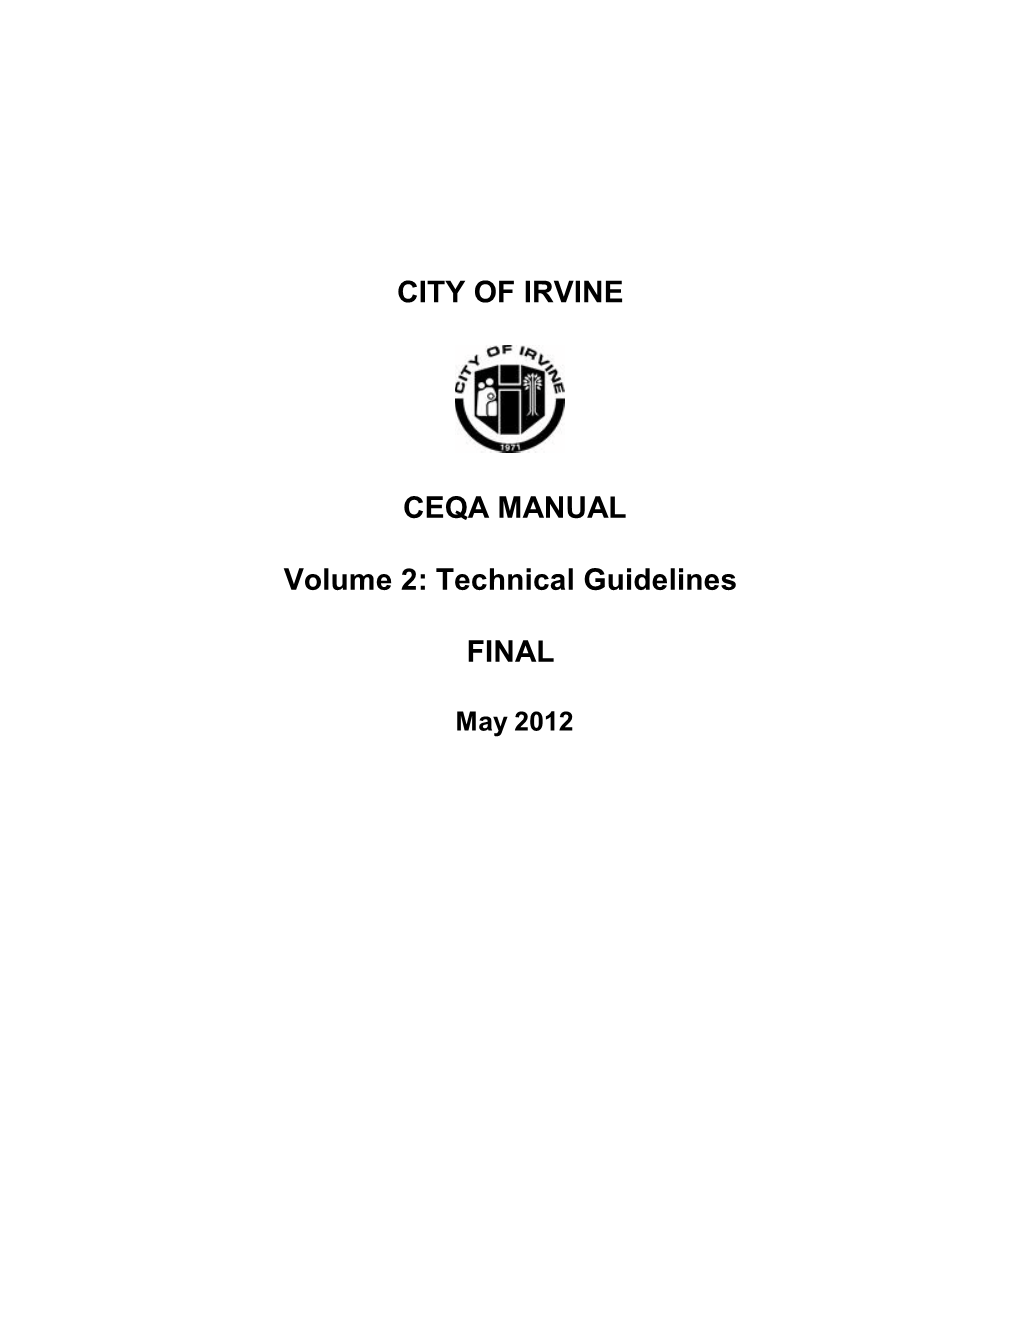 CEQA Manual Vol. 2